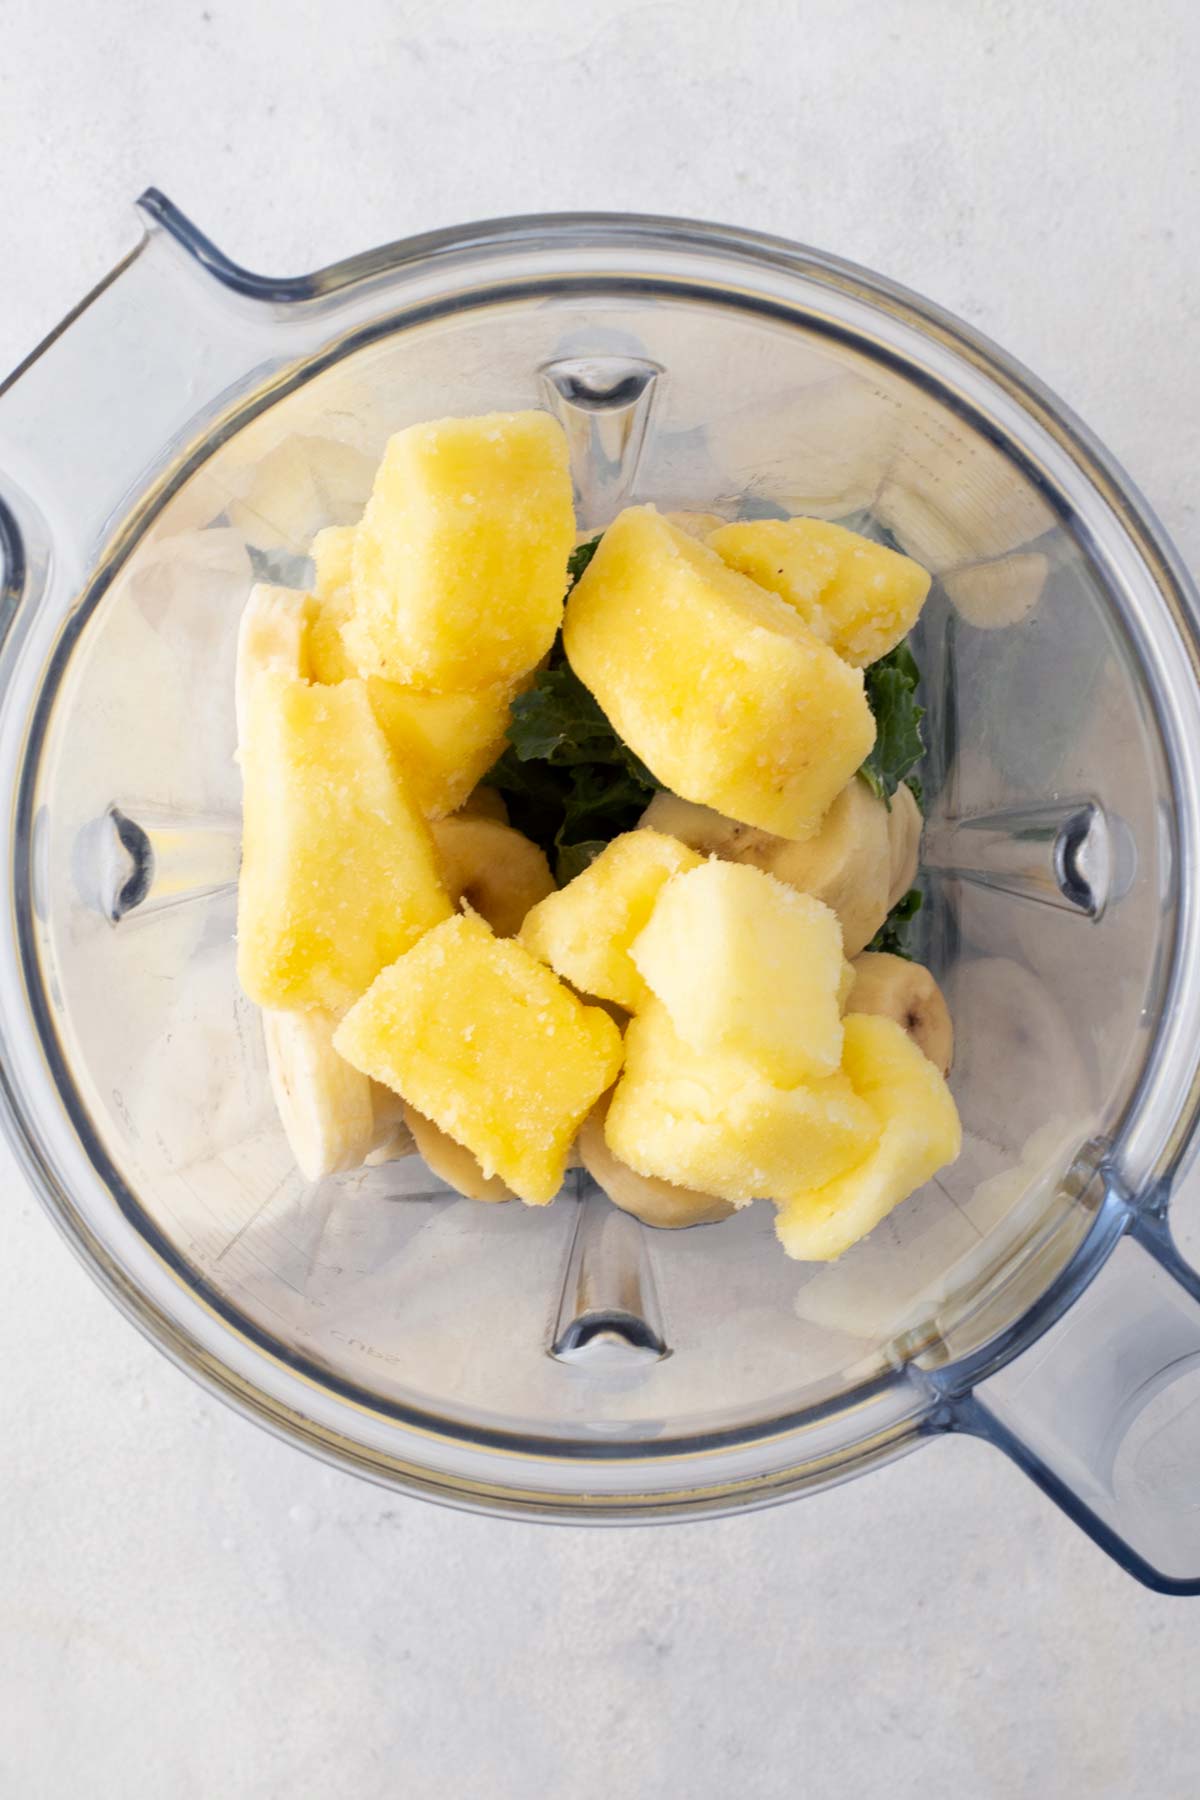 Kale pineapple smoothie ingredients in a blender.